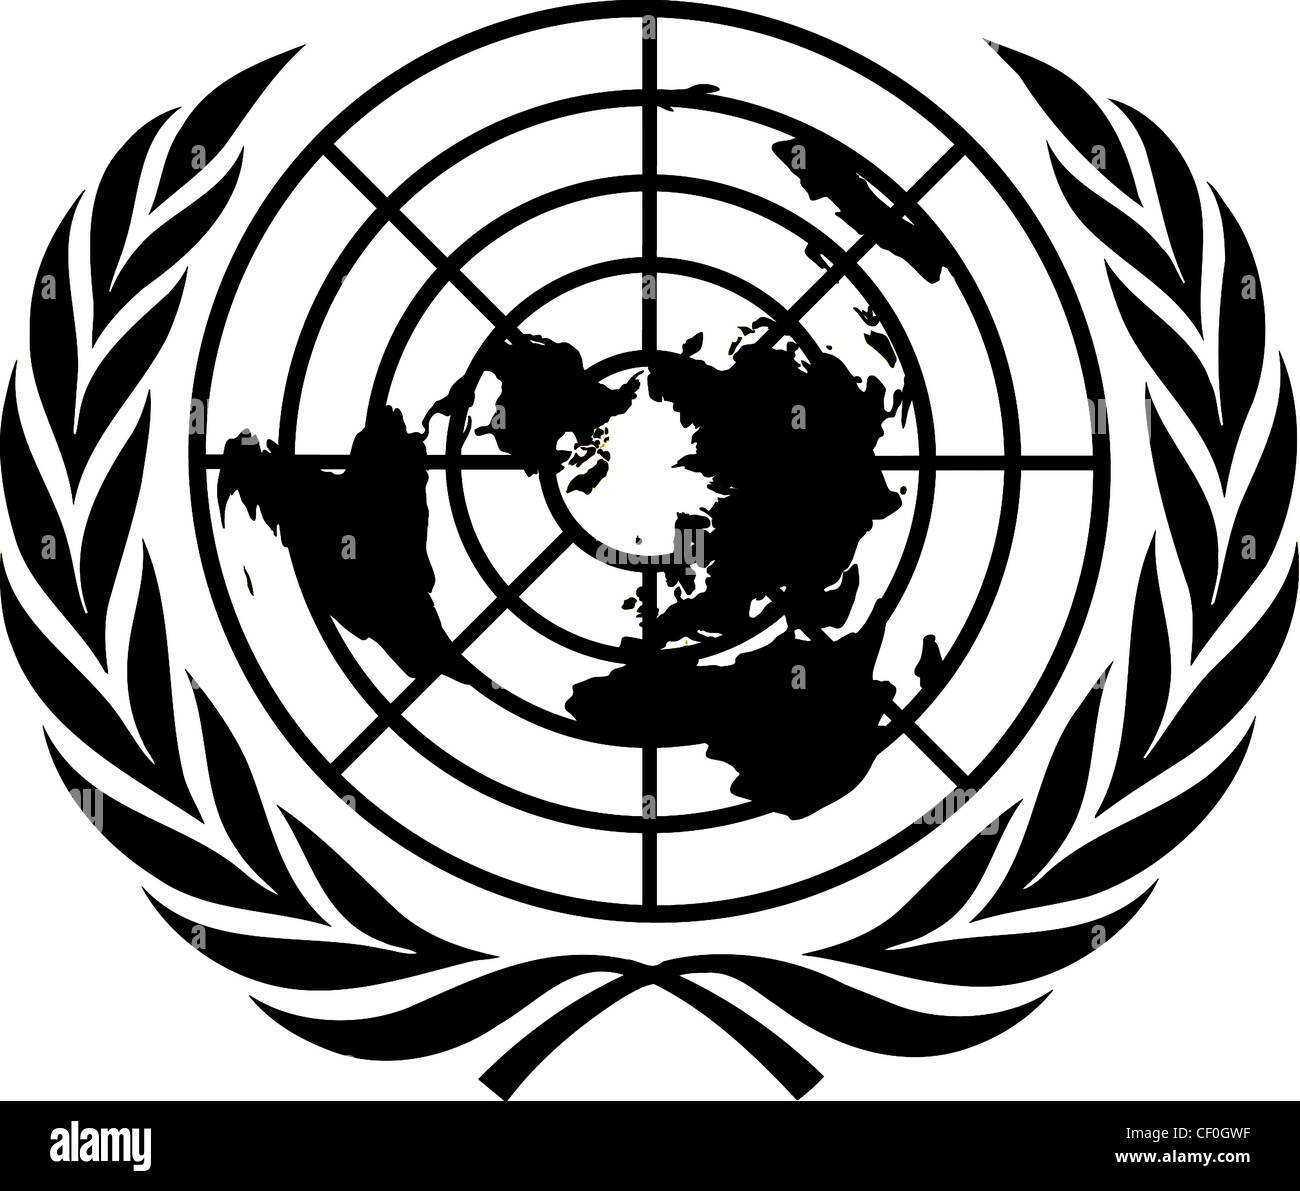 Emblema de las naciones unidas fotografías e imágenes de alta resolución -  Alamy